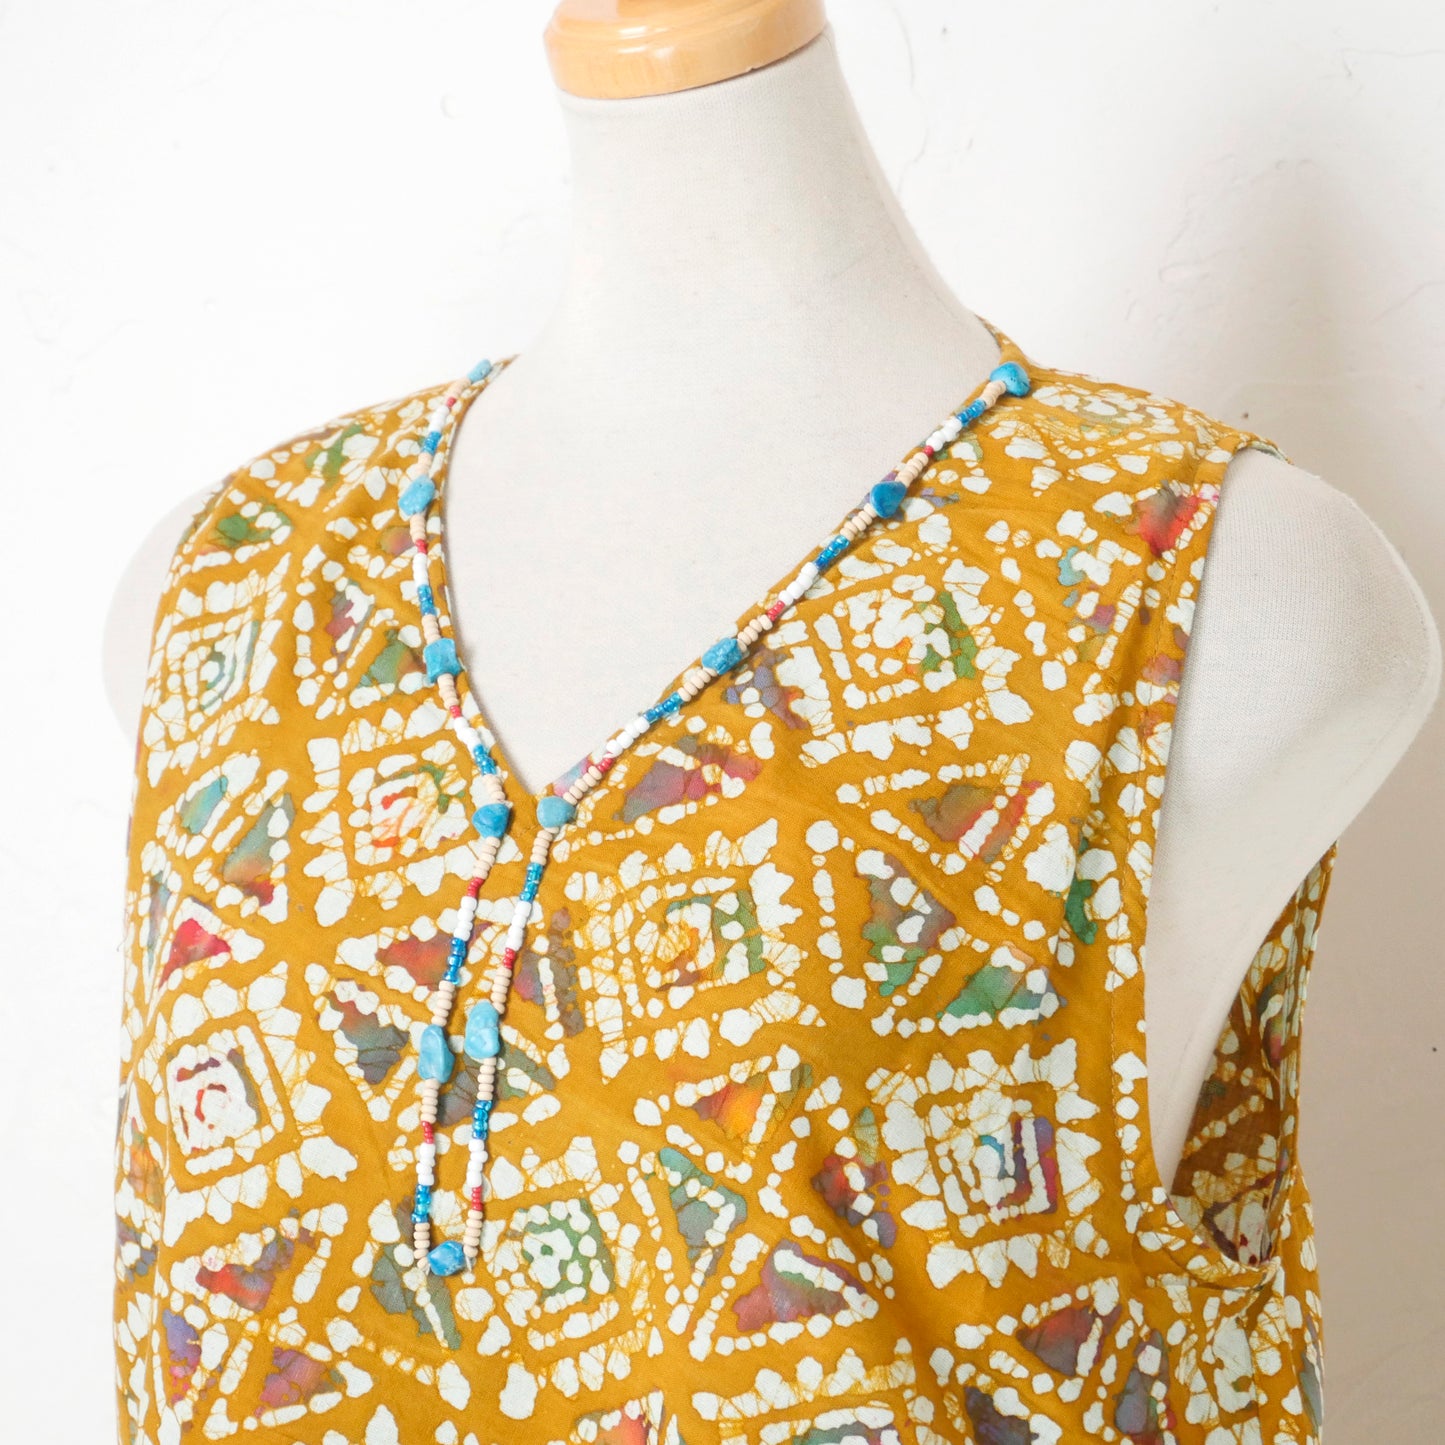 सूती बाटिक प्रिंट आस्तीन रहित ड्रेस